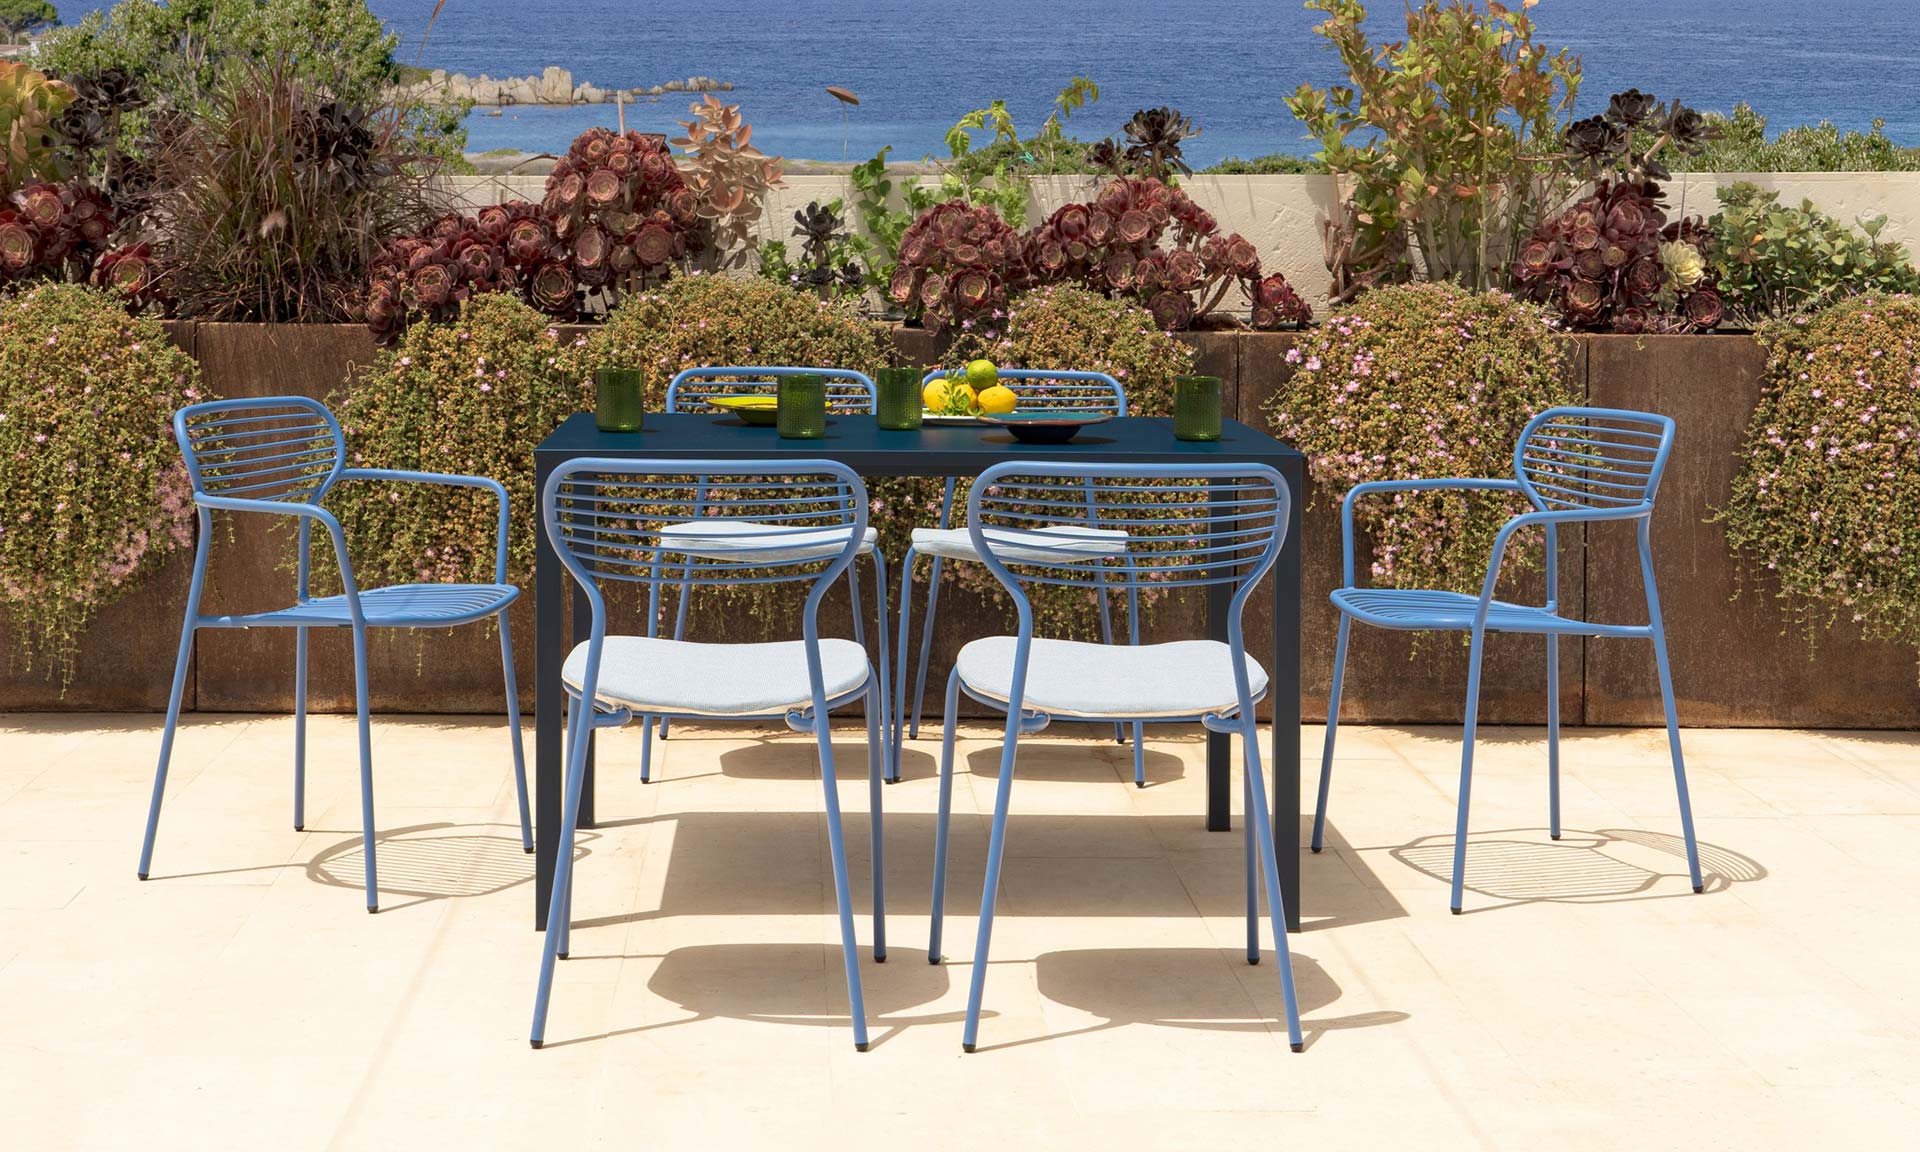 Martin Drechsel entwarf den Outdoor-Stuhl Apero, inspiriert von einem Sperrholzstuhl – DesignMag.cz